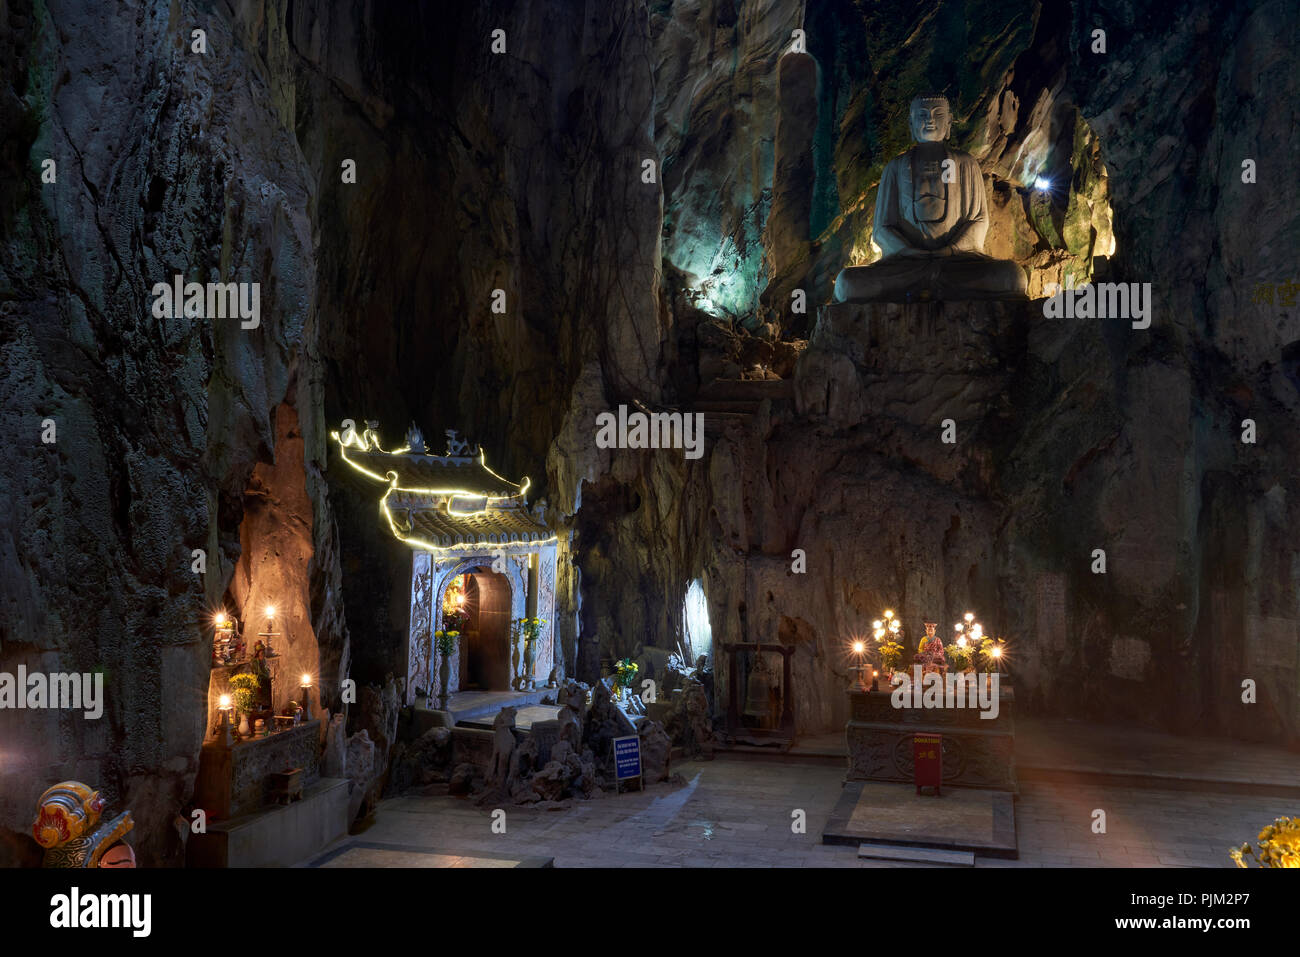 Tempio buddista entro Huyen Khong Cave nelle montagne di marmo, a metà strada tra Hoi An e Da Nang, Vietnam. Il tempio è parte di un complesso di grotte Foto Stock